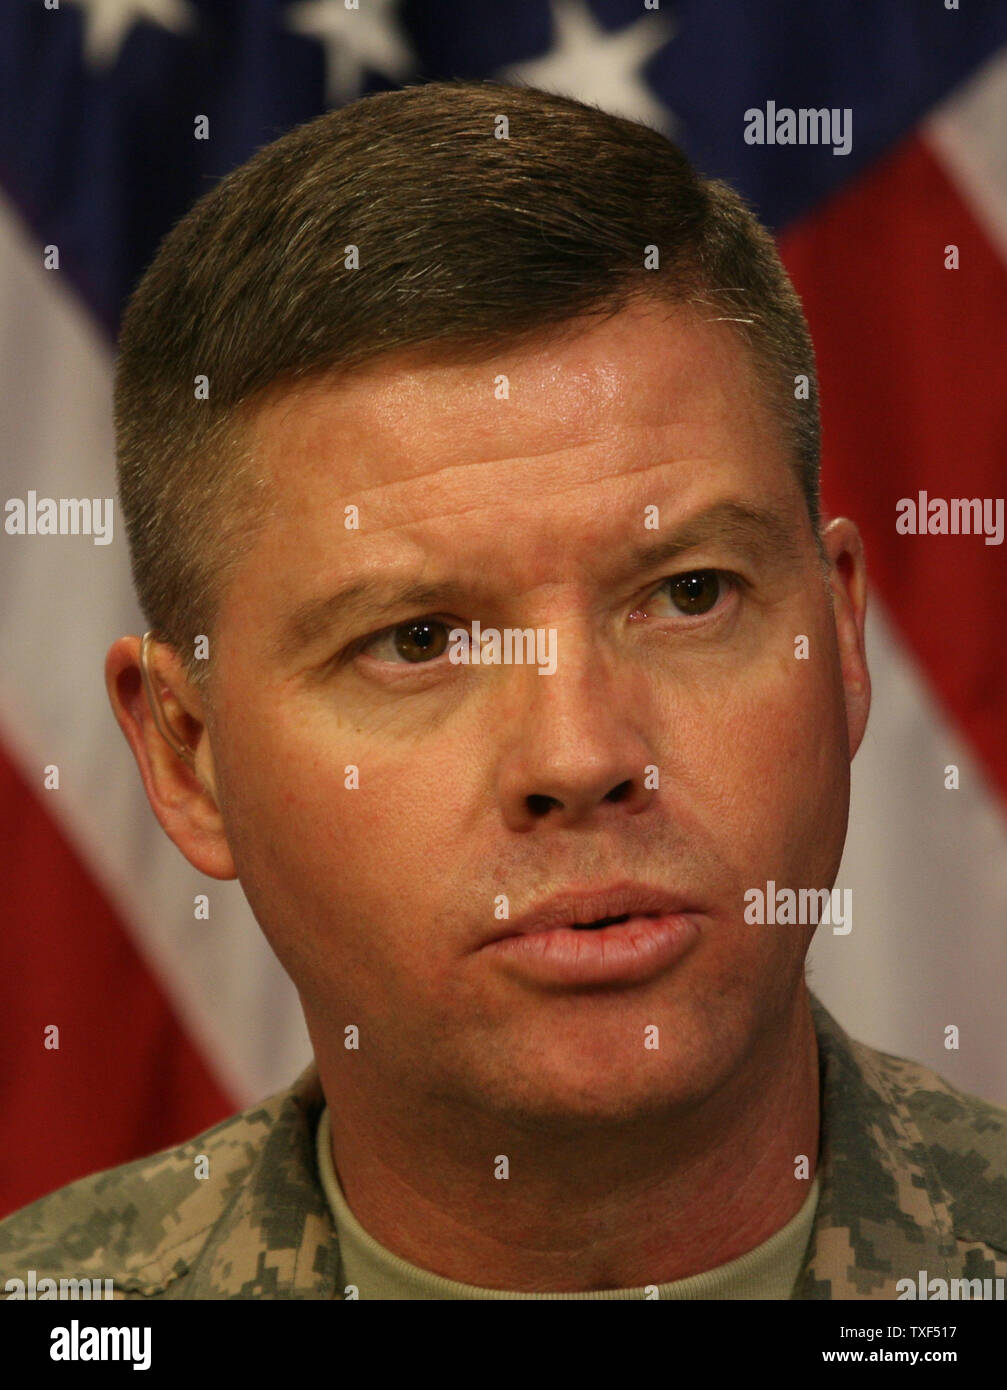 Porte-parole de l'armée américaine le Général David Perkins informe les médias sur les opérations militaires, à Bagdad, l'Iraq le 24 septembre 2008. (Photo d'UPI/Ali Jasim) Banque D'Images